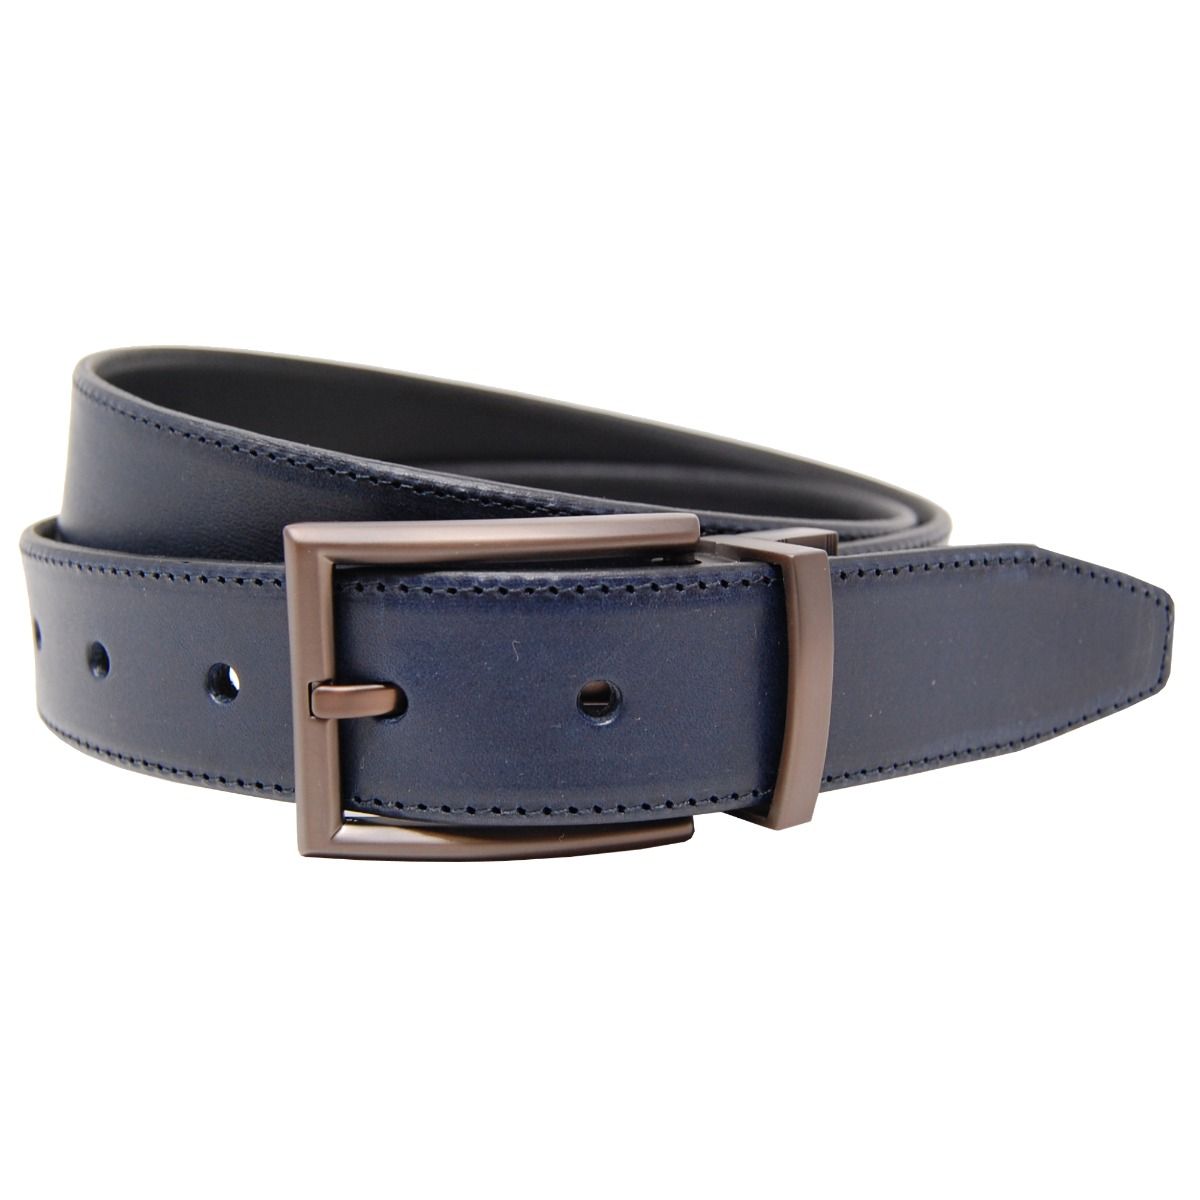 British Belt Company Falcon 35mm Reversible Leather Belt - Pediwear ...